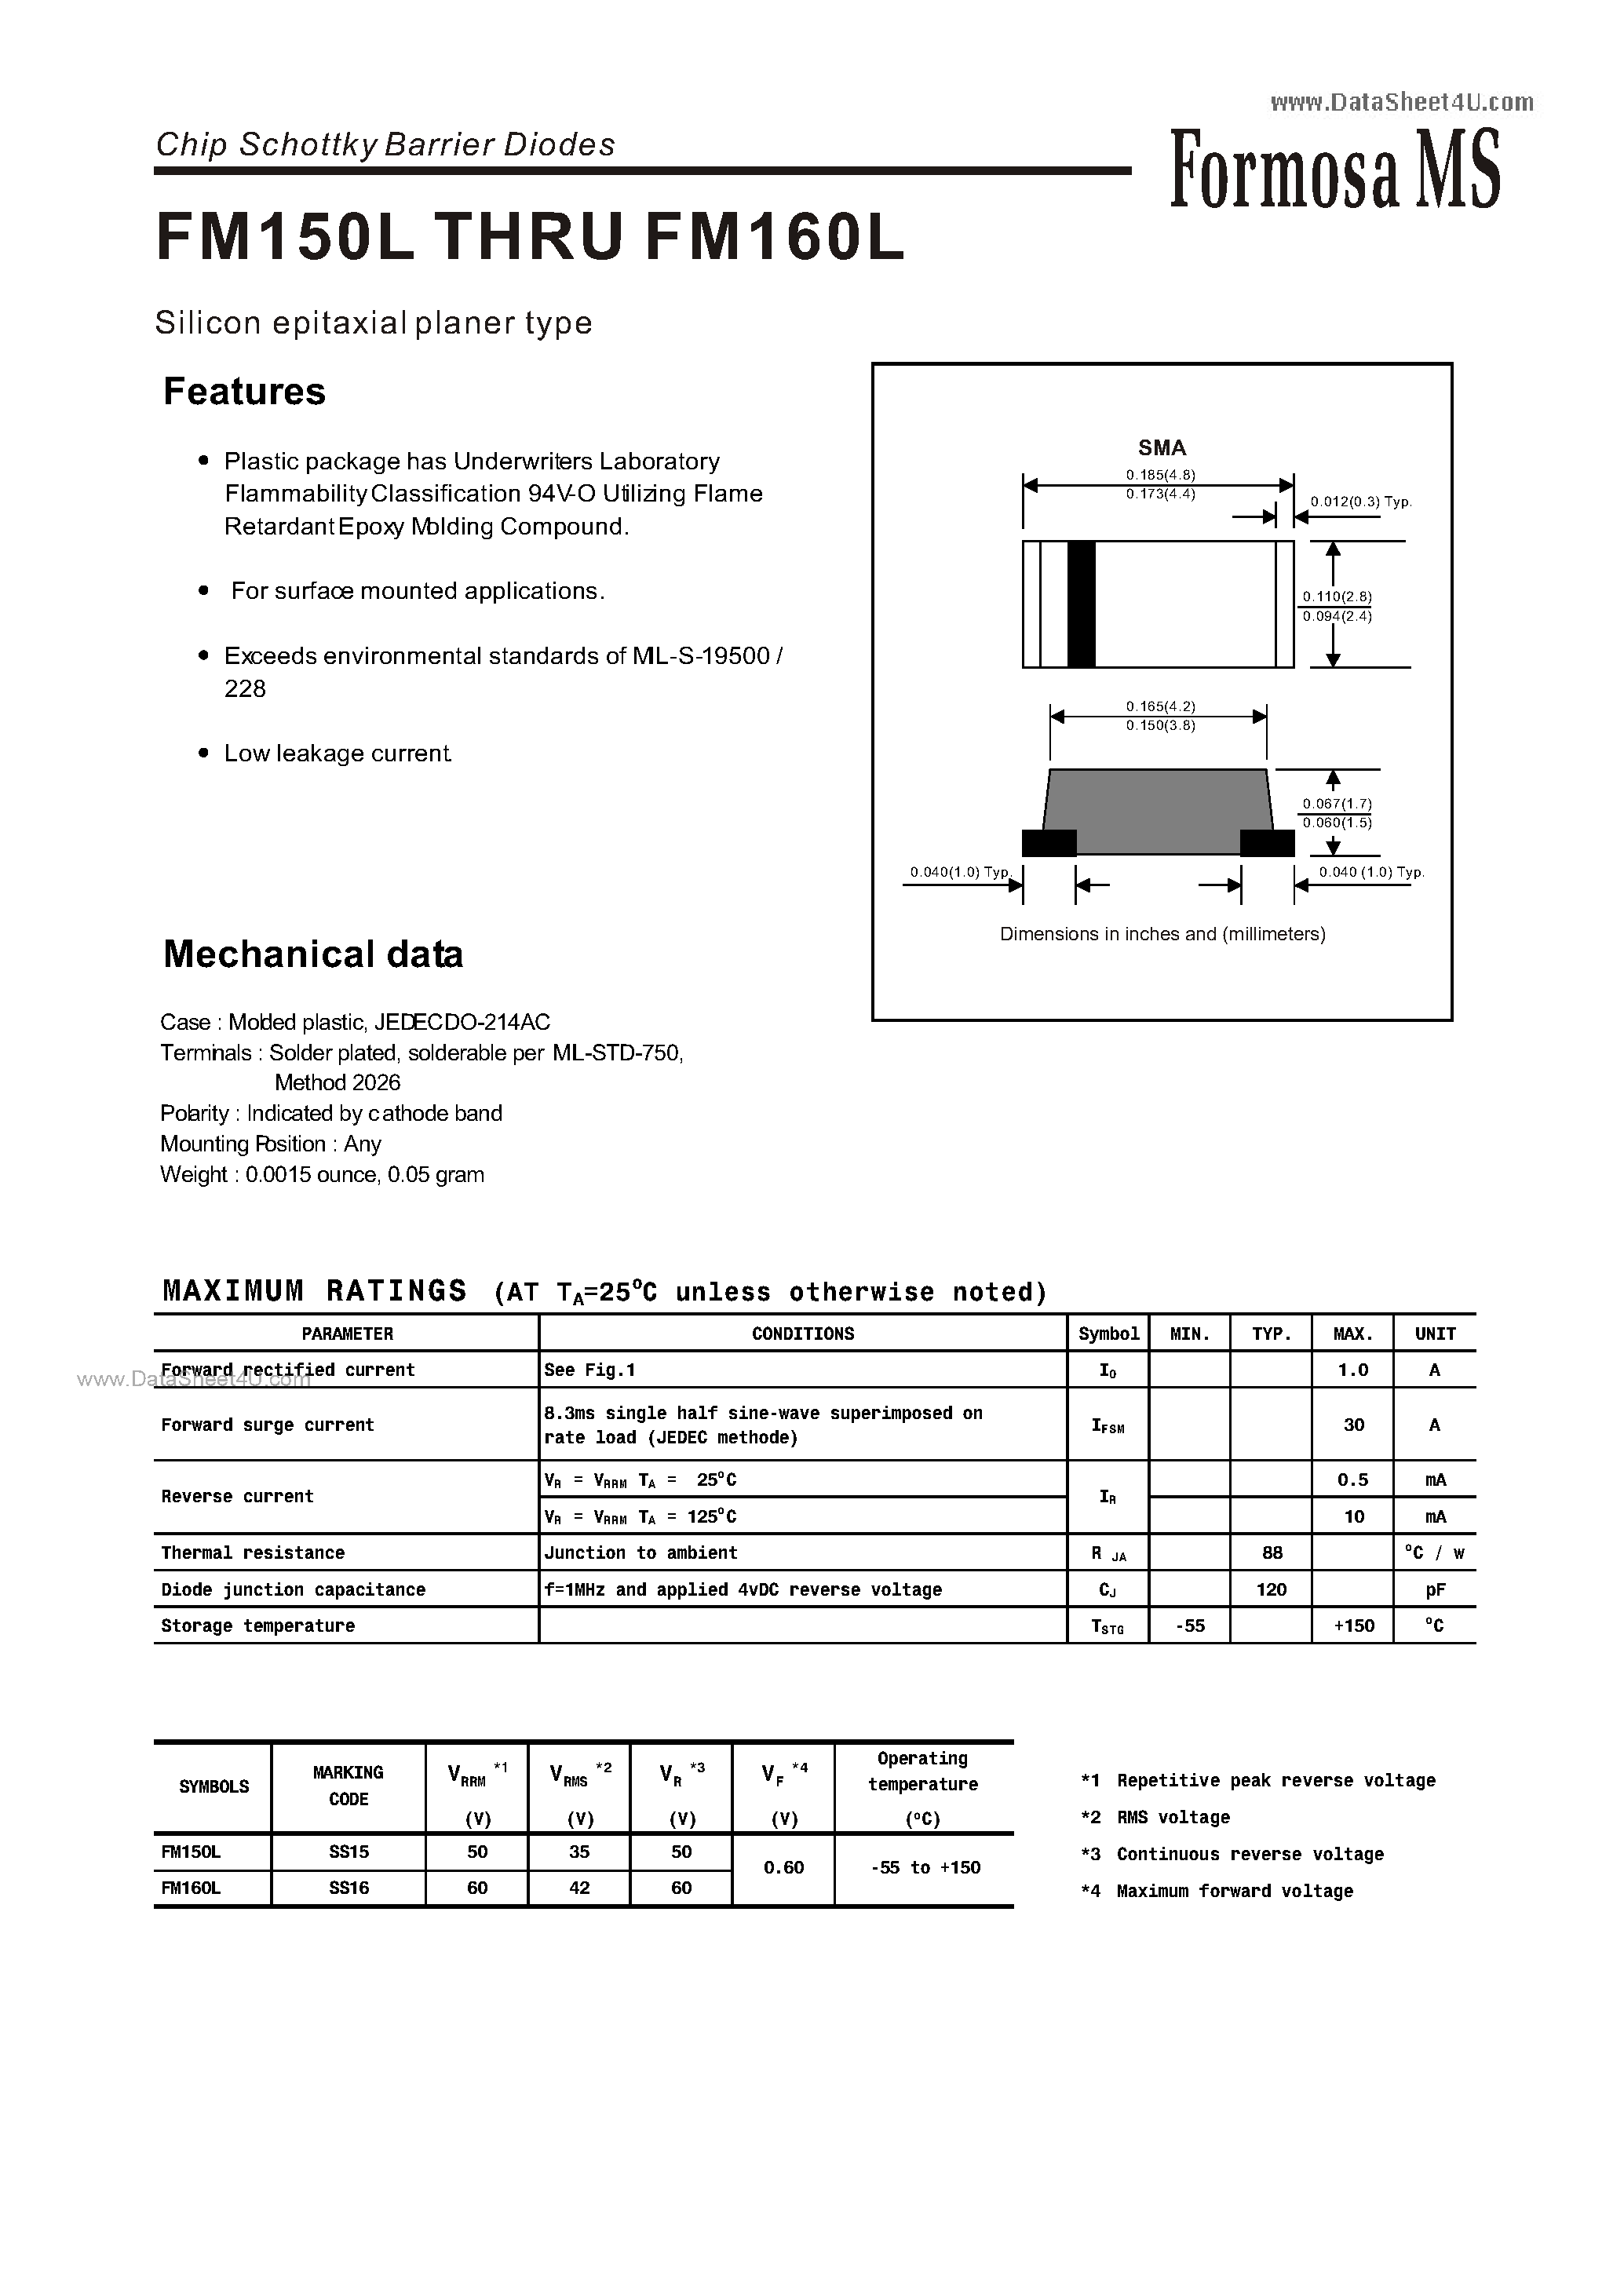 Datasheet FM150L - (FM150L / FM160L) Chip Schottky Barrier Diodes page 1